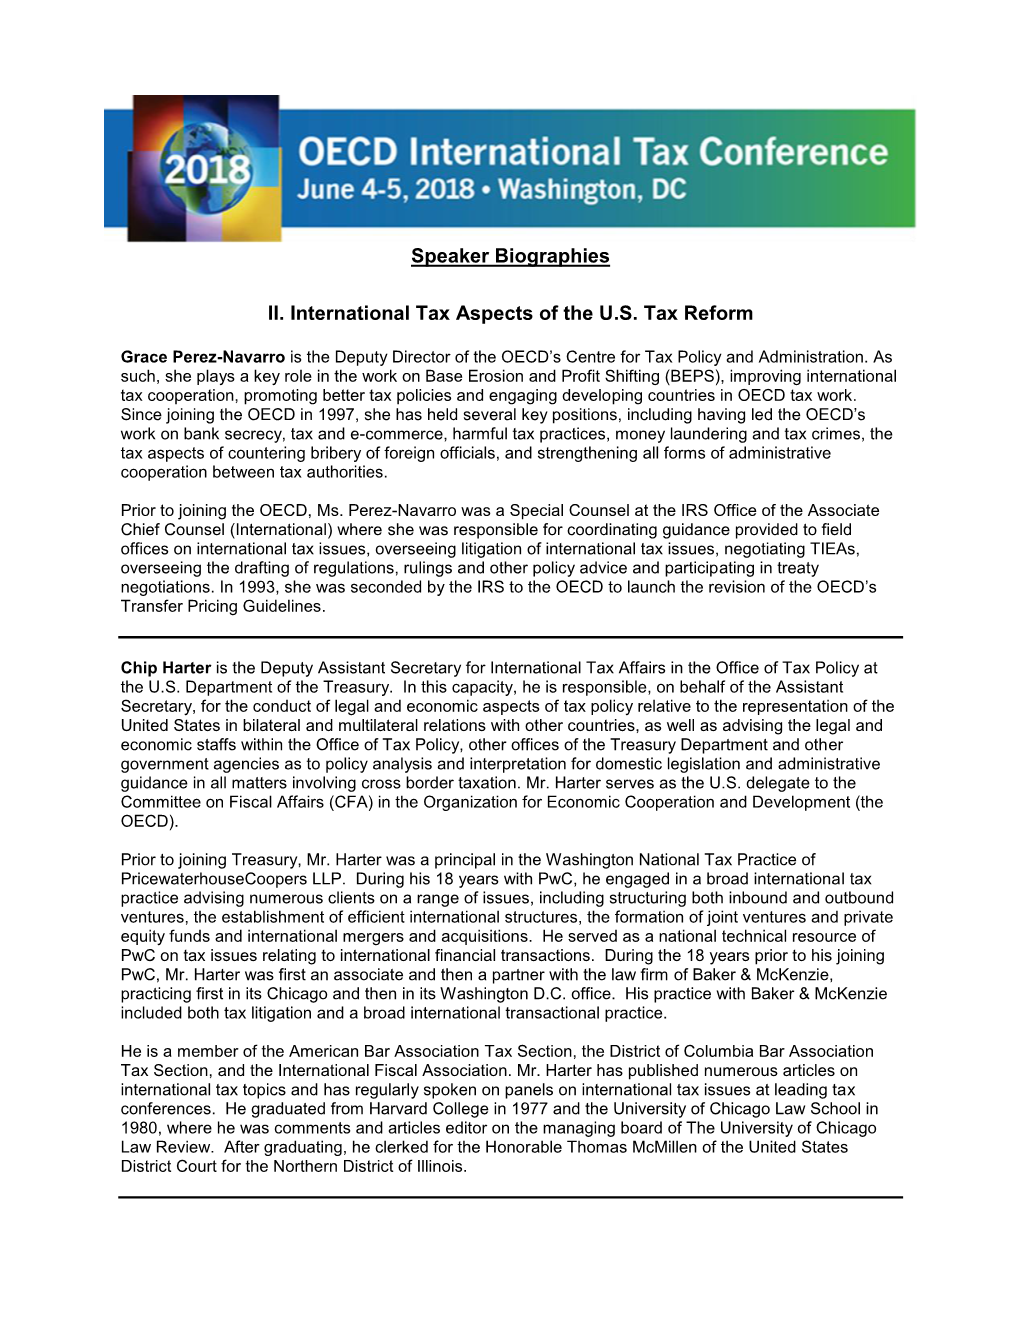 Speaker Biographies II. International Tax Aspects of the U.S. Tax Reform